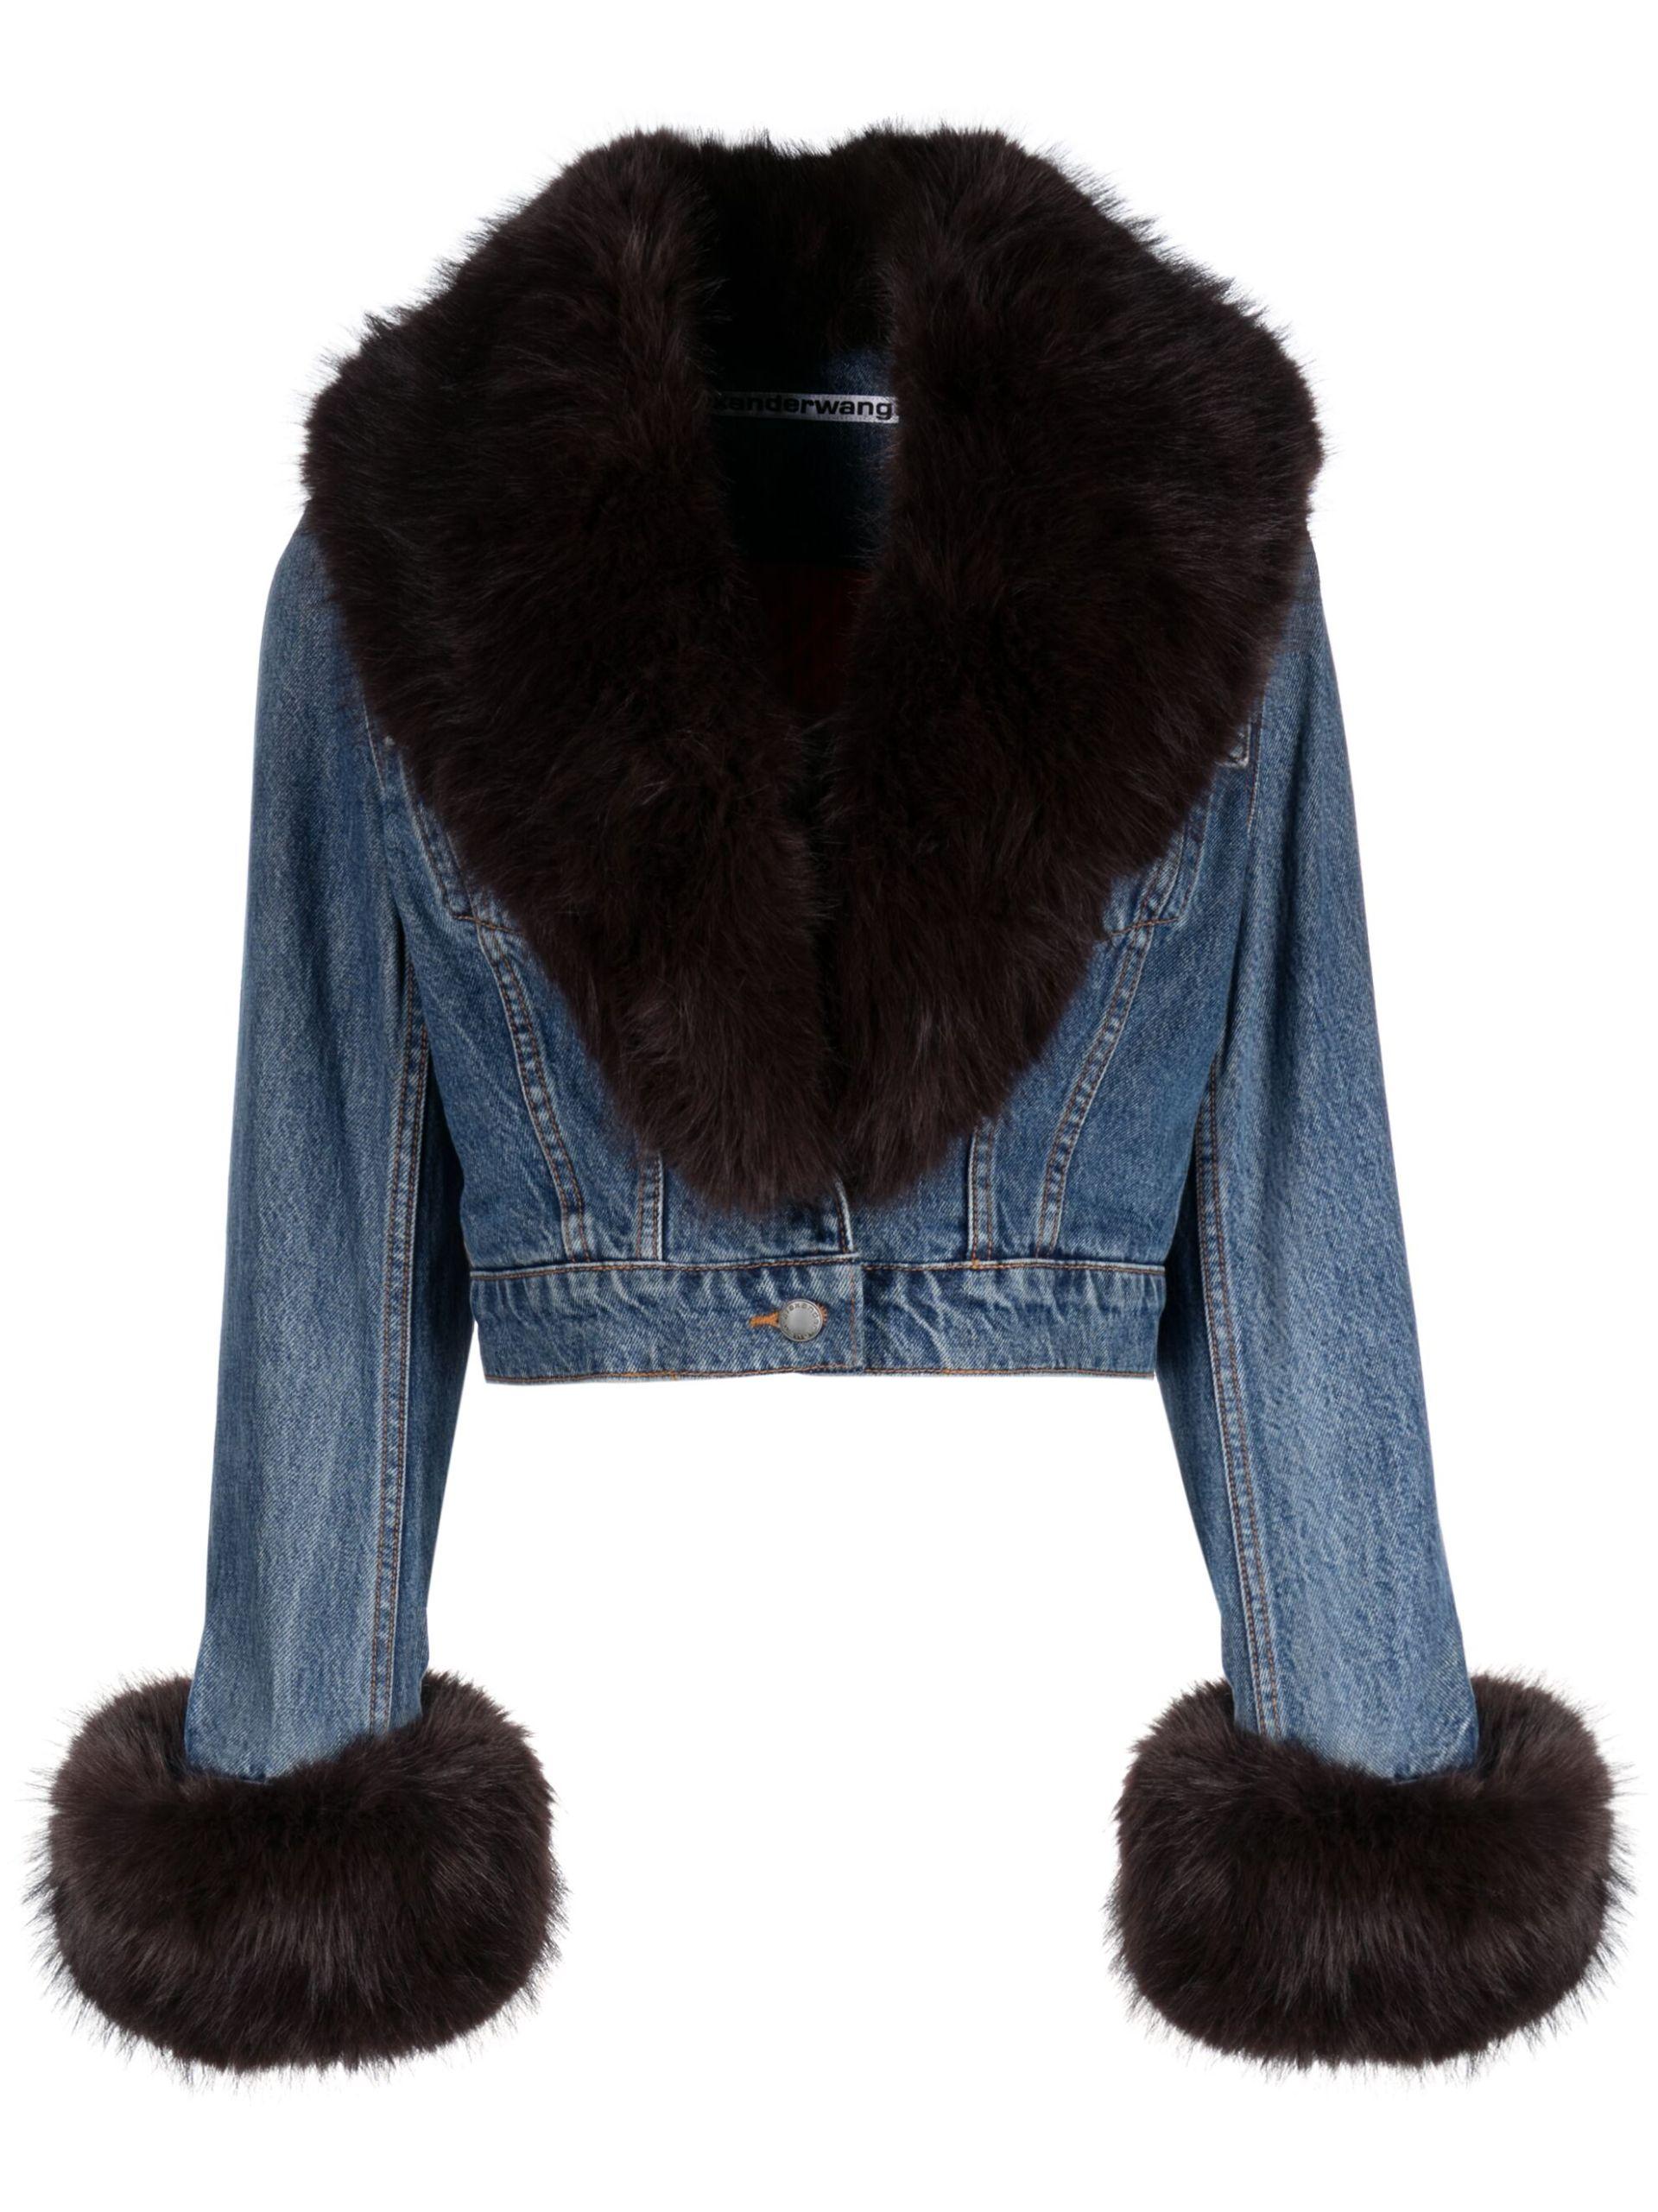 LEVI'S Faux Fur Collar Blue Denim Cotton Cropped Jacket M 10-12 Girls |  Dark wash denim jacket, Lightweight denim, Crop jacket